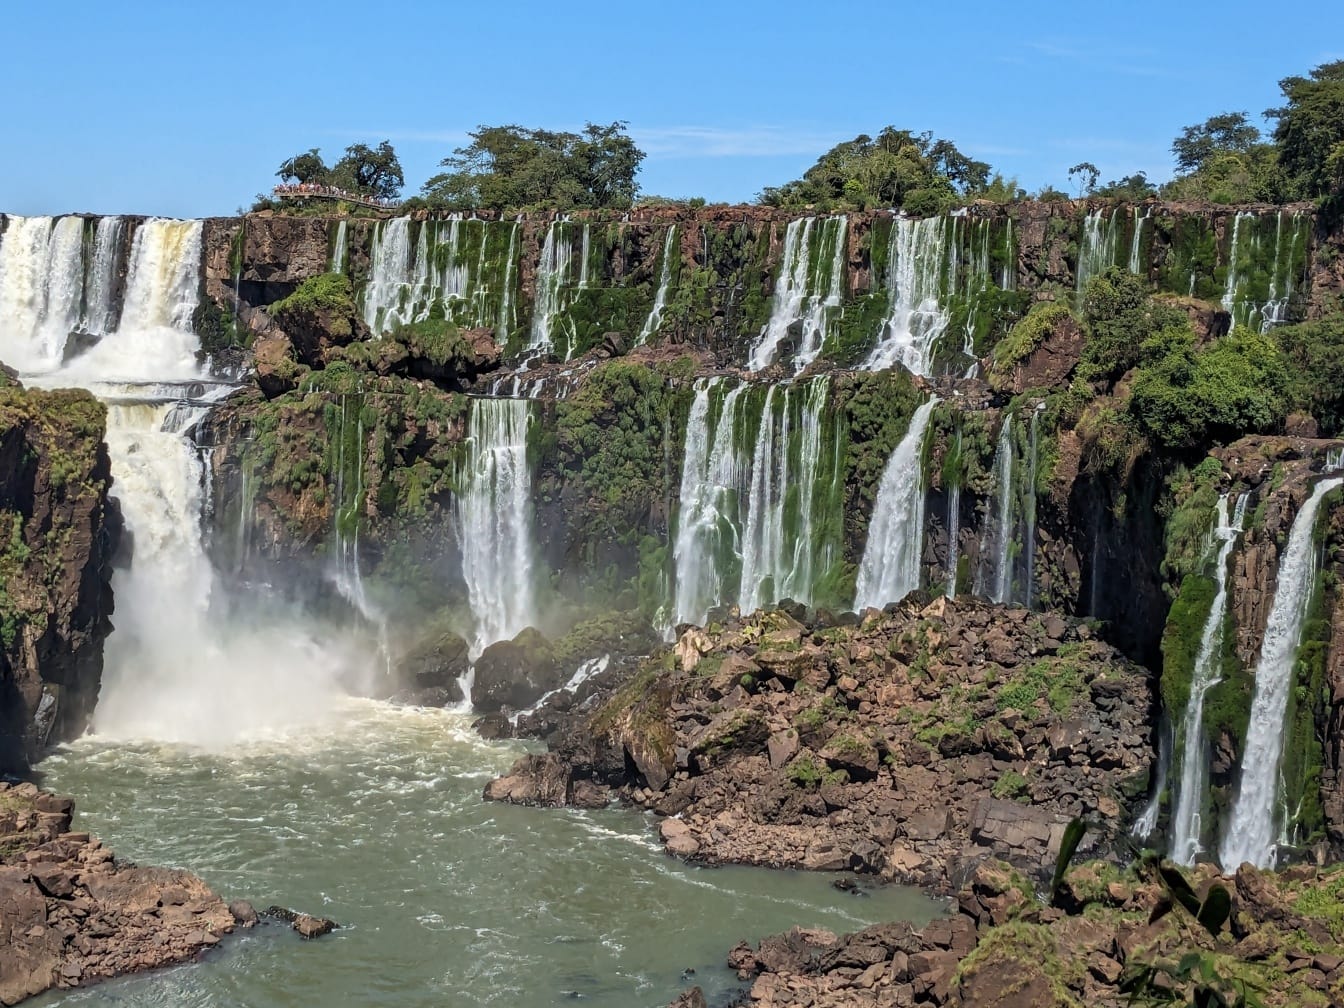 Veličanstveni krajolik rijeke Iguazu sa slapovima i zelenim stablima na liticama